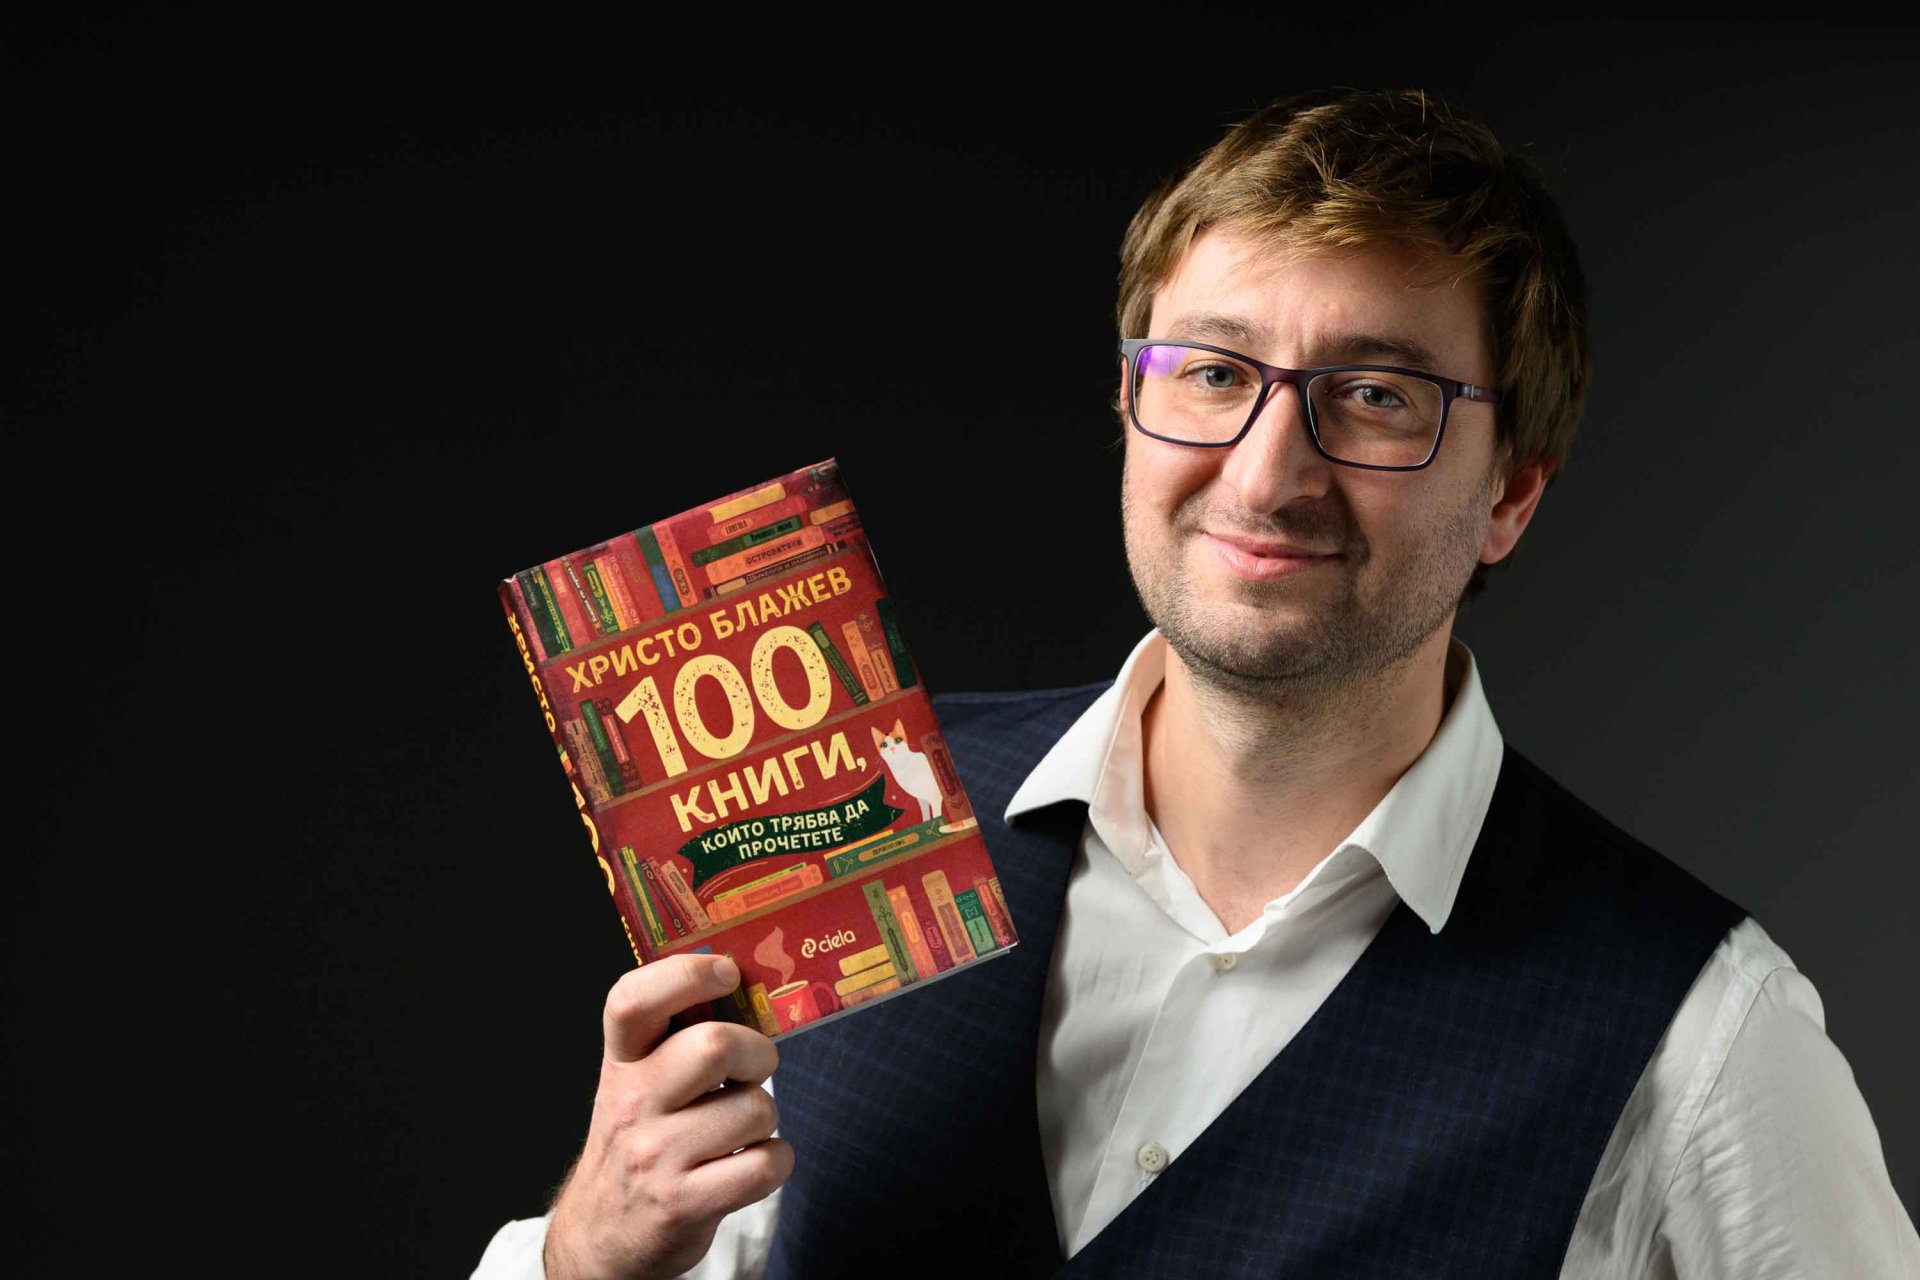 Професионалният читател Христо Блажев представя „100 книги, които трябва да прочетете“ в един общ сборник